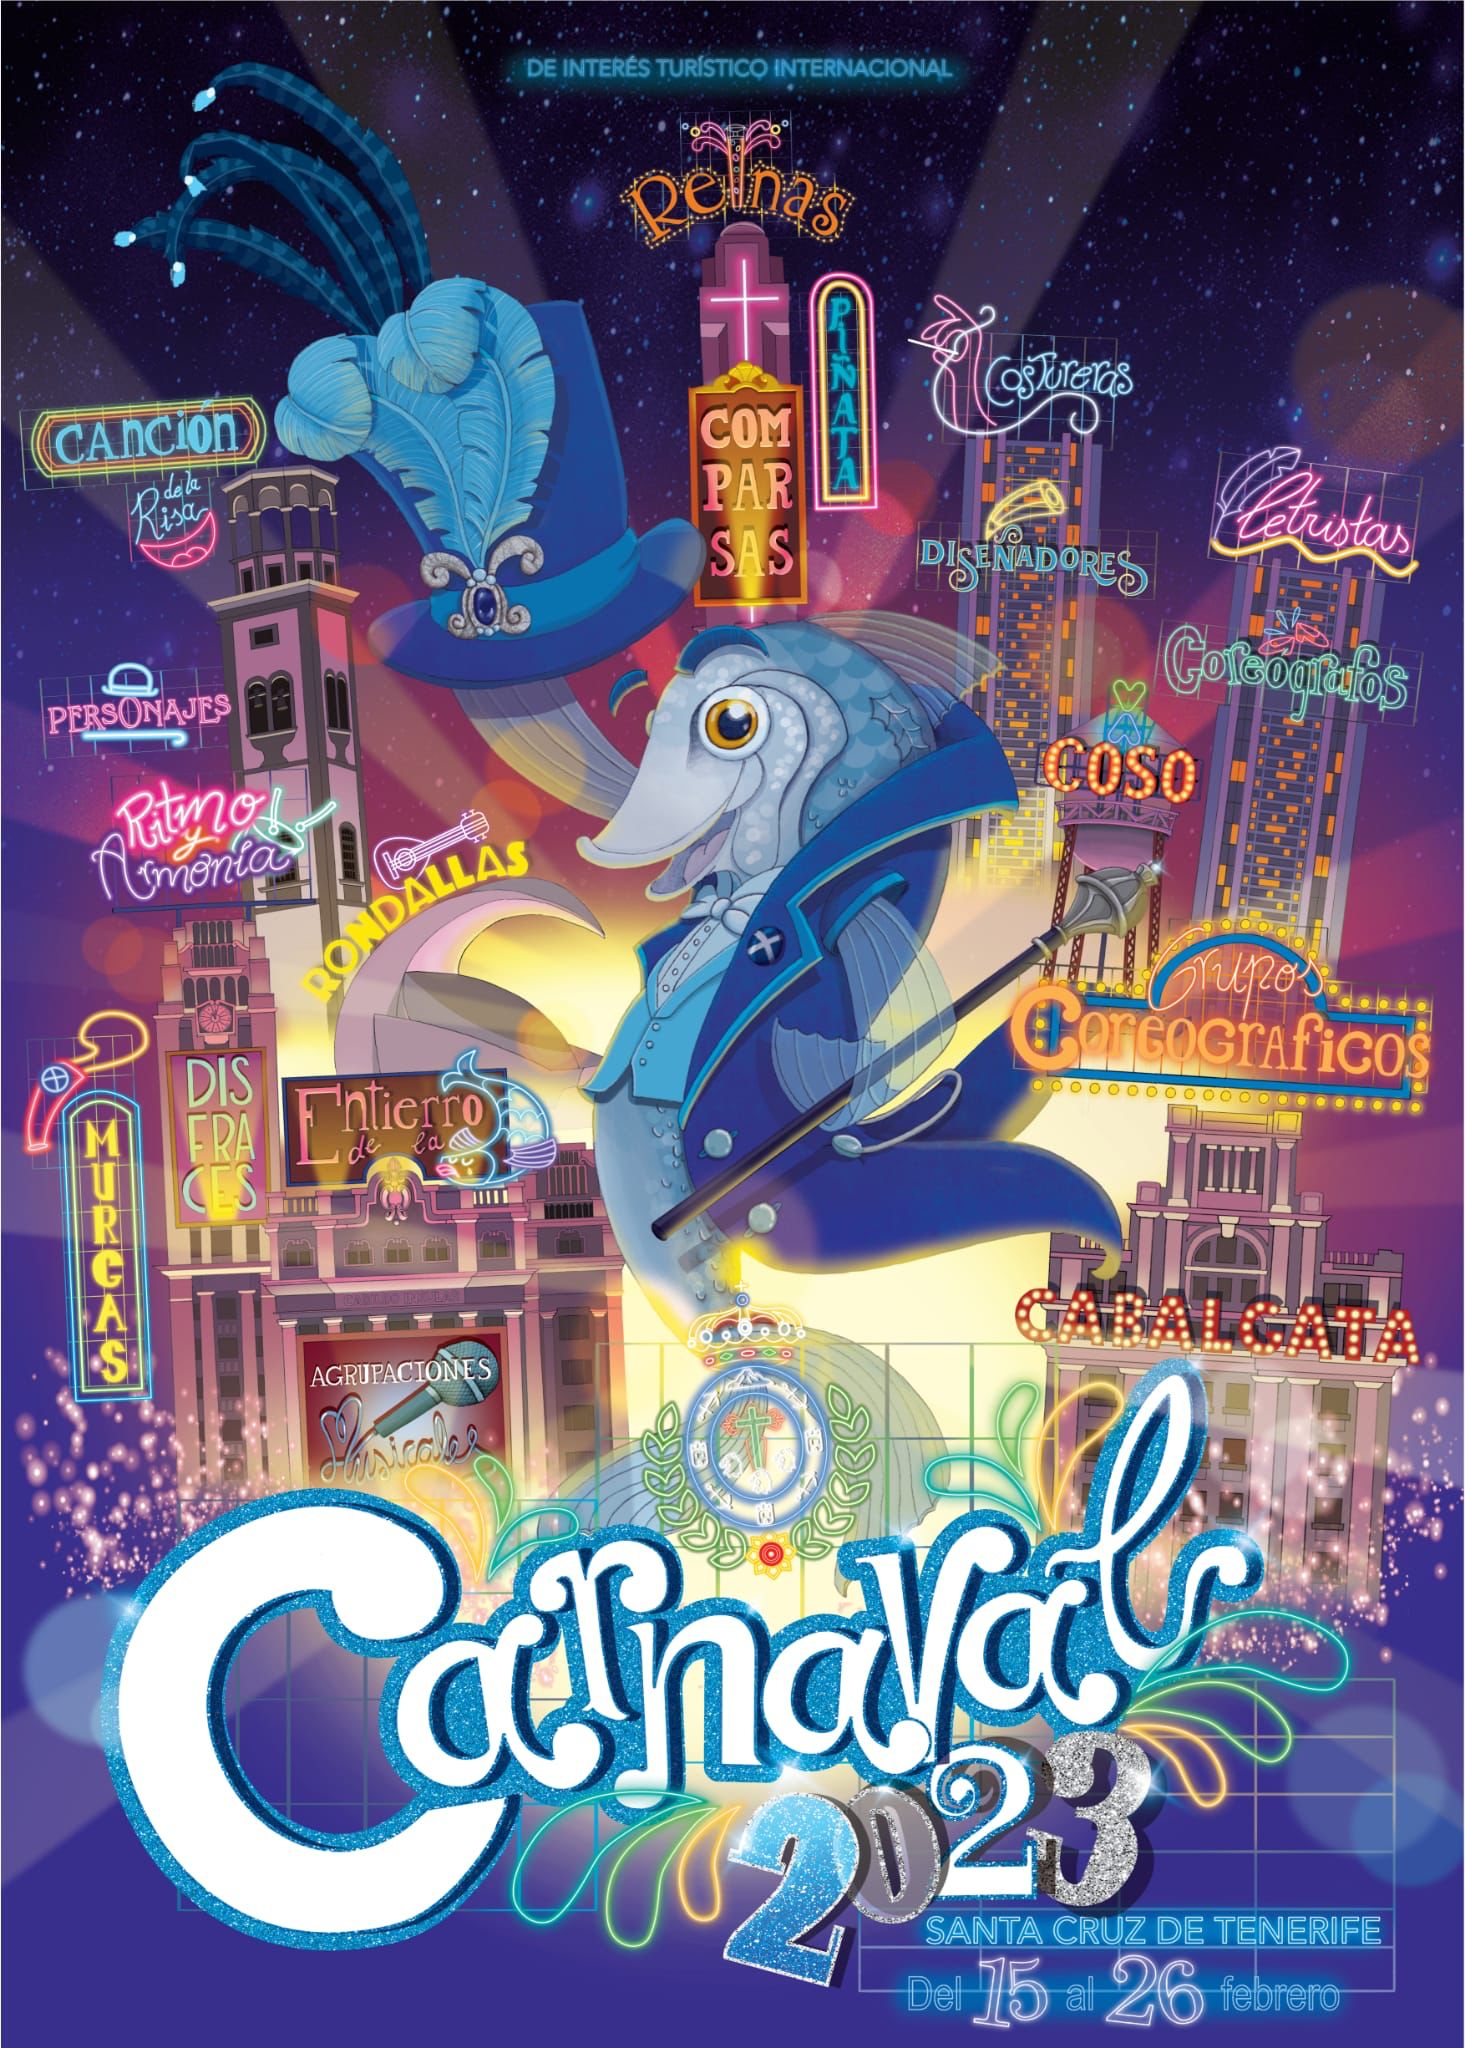 Carnaval de Tenerife 2023 - Programa - Carnaval de Tenerife 2021 Virtual-TV Canaria, Redes sociales ✈️ Foro Islas Canarias